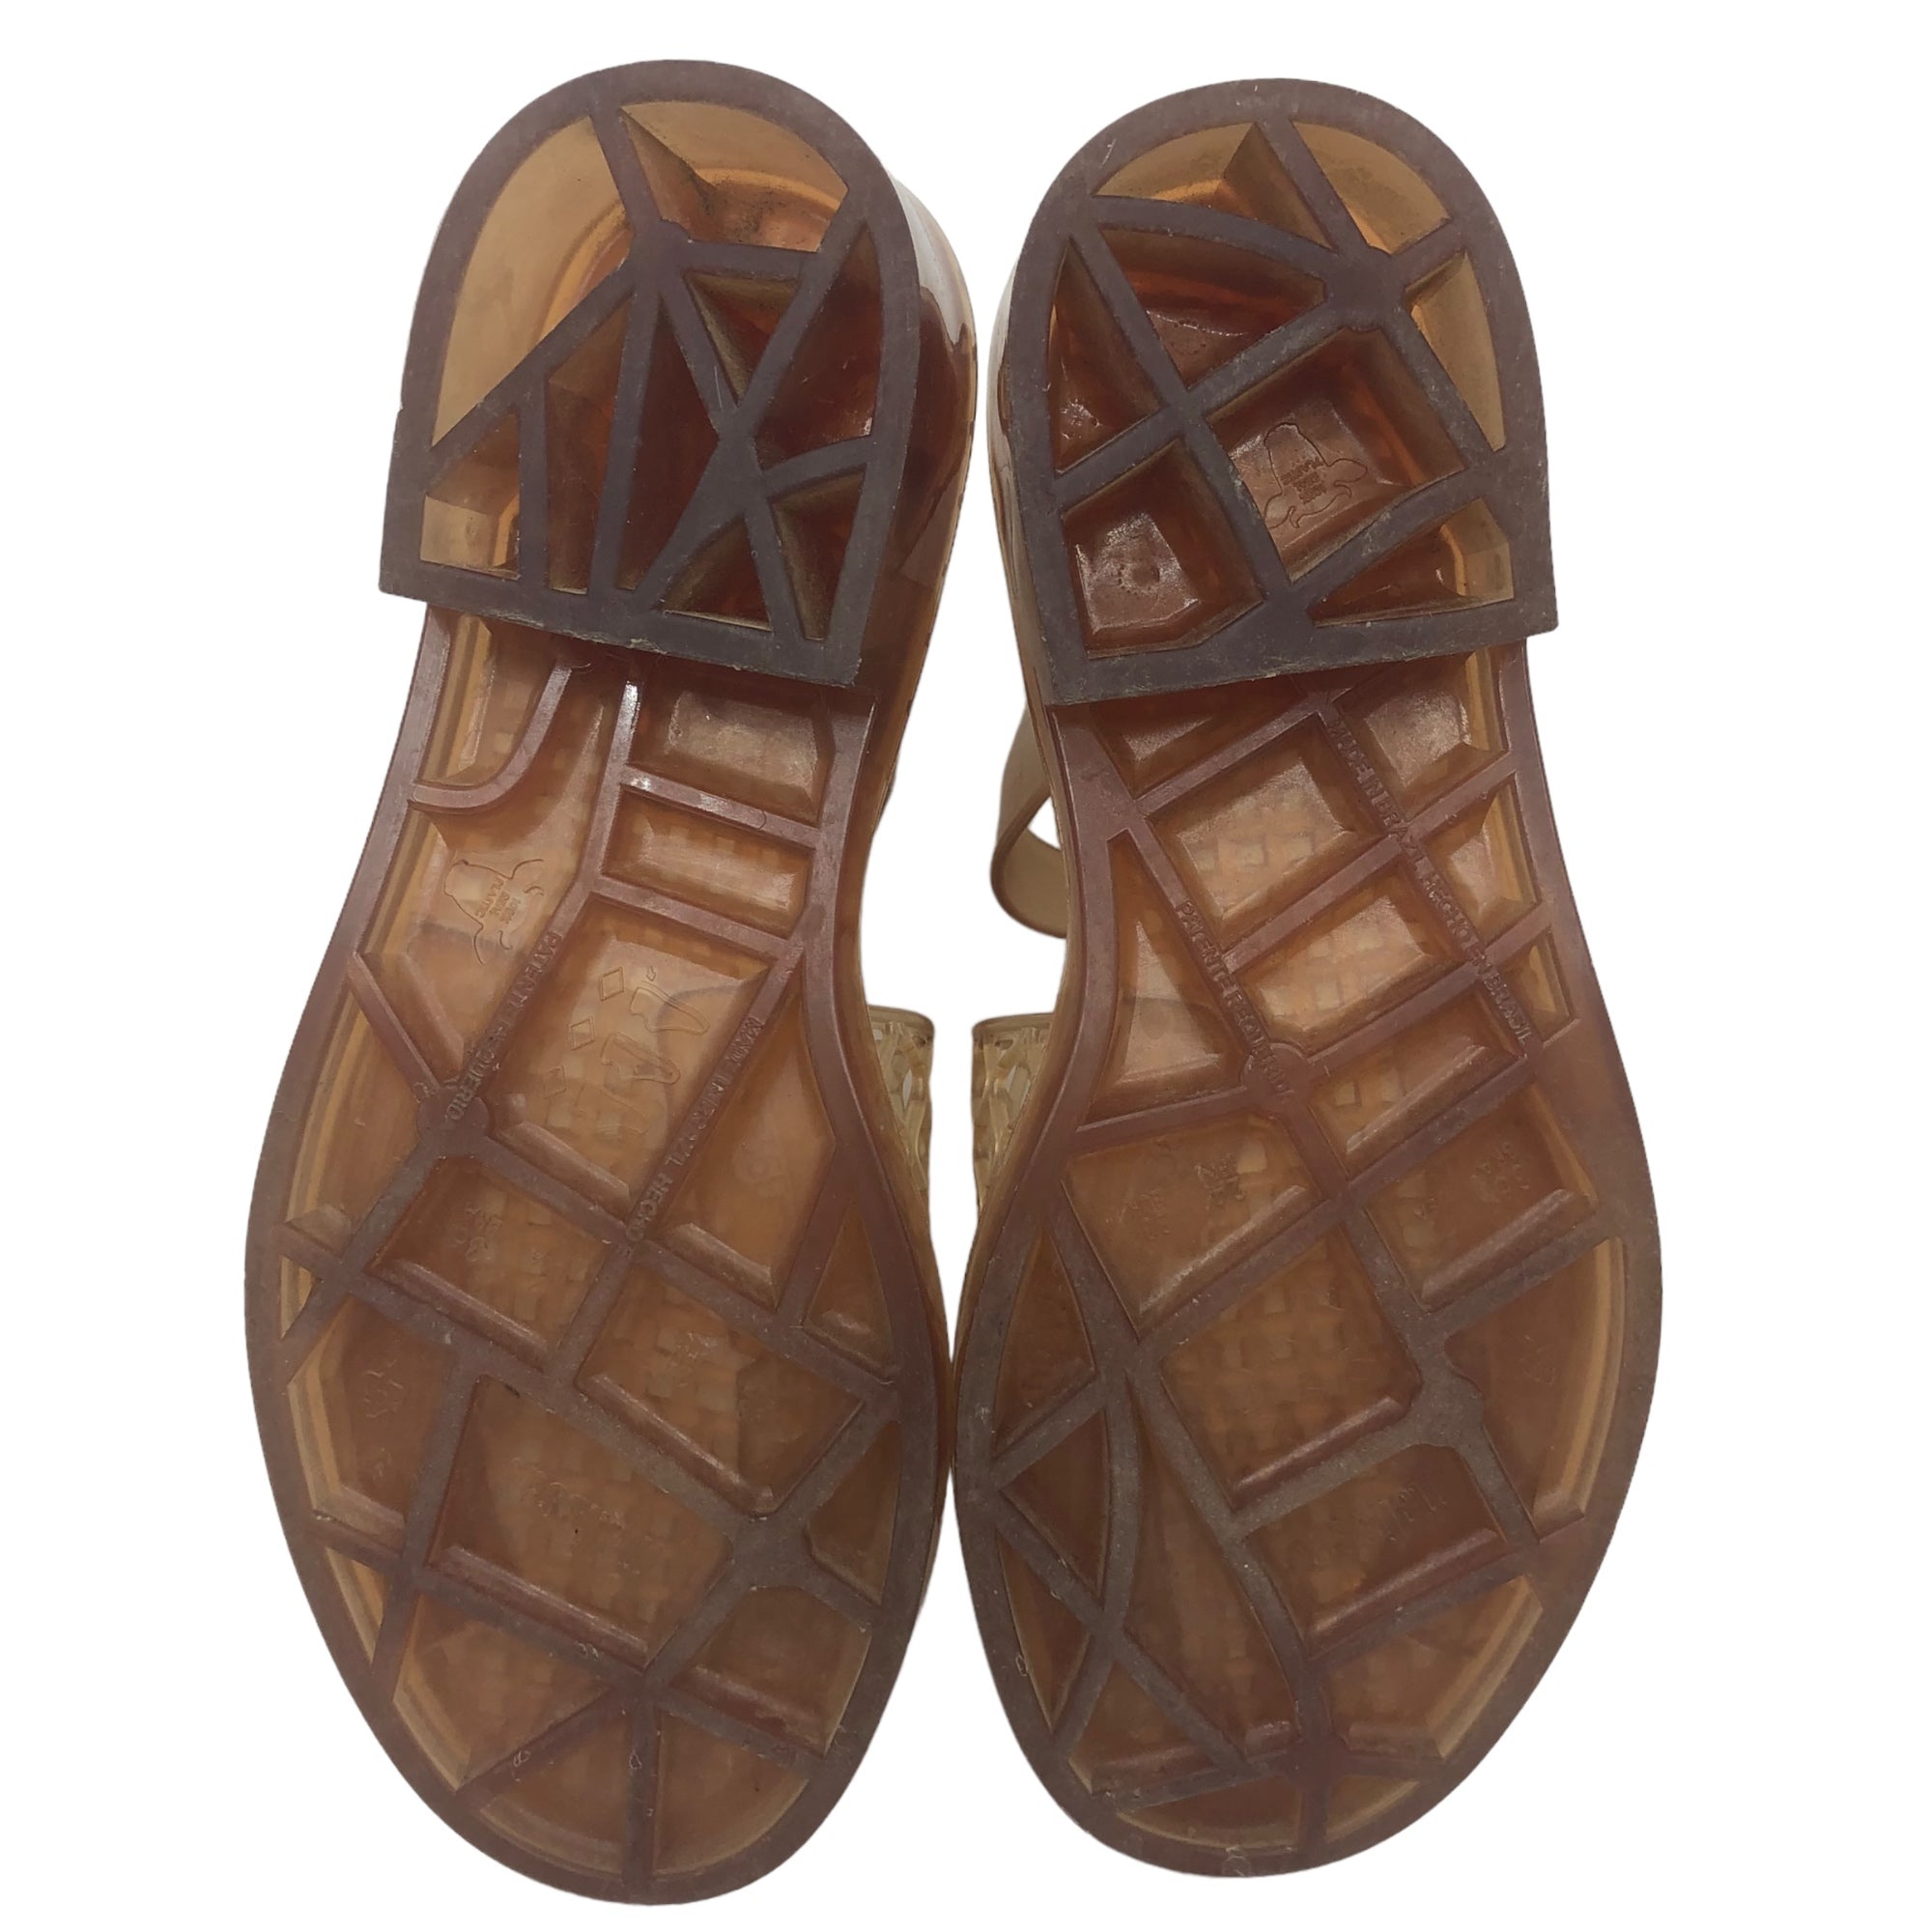 MELISSA×OPENING CEREMONY(メリッサ×オープニングセレモニー) vinyl sandals ビニール サンダル SIZE 24.0cm ベージュ